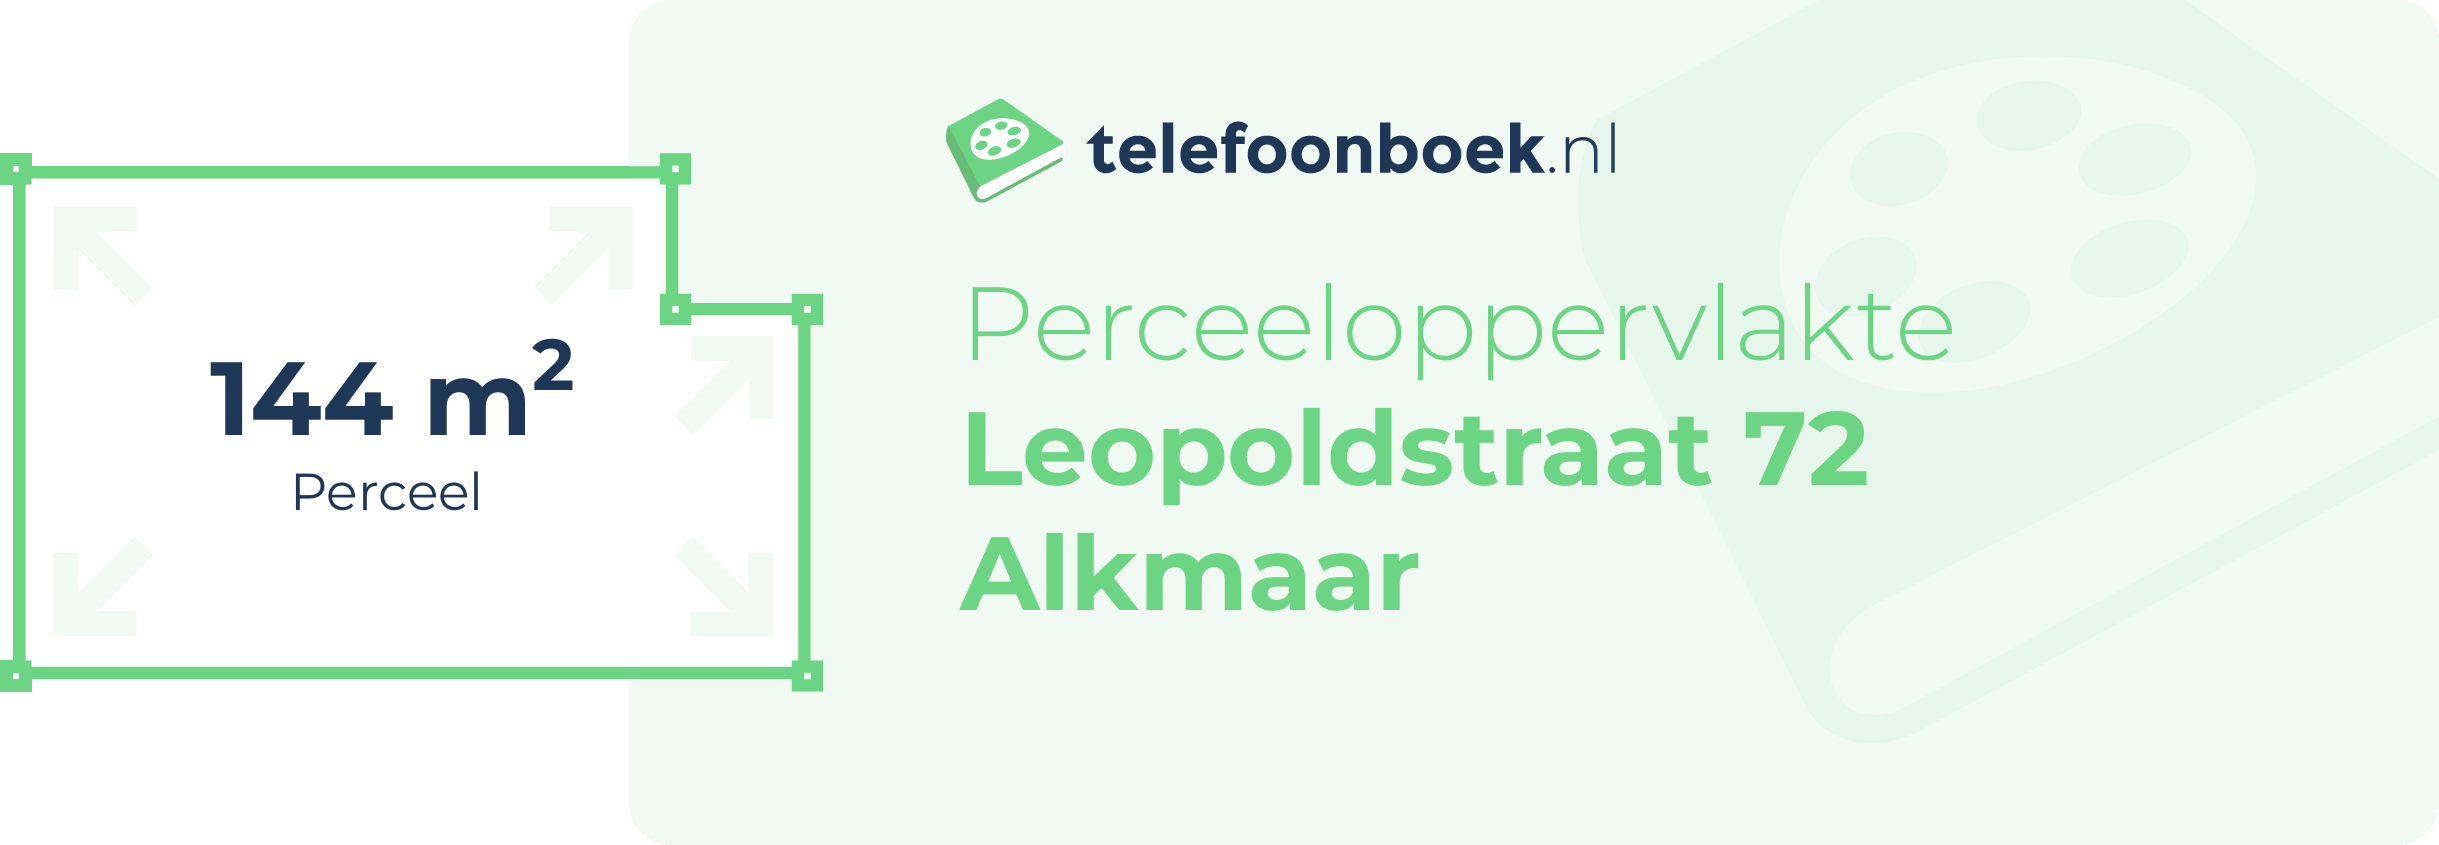 Perceeloppervlakte Leopoldstraat 72 Alkmaar